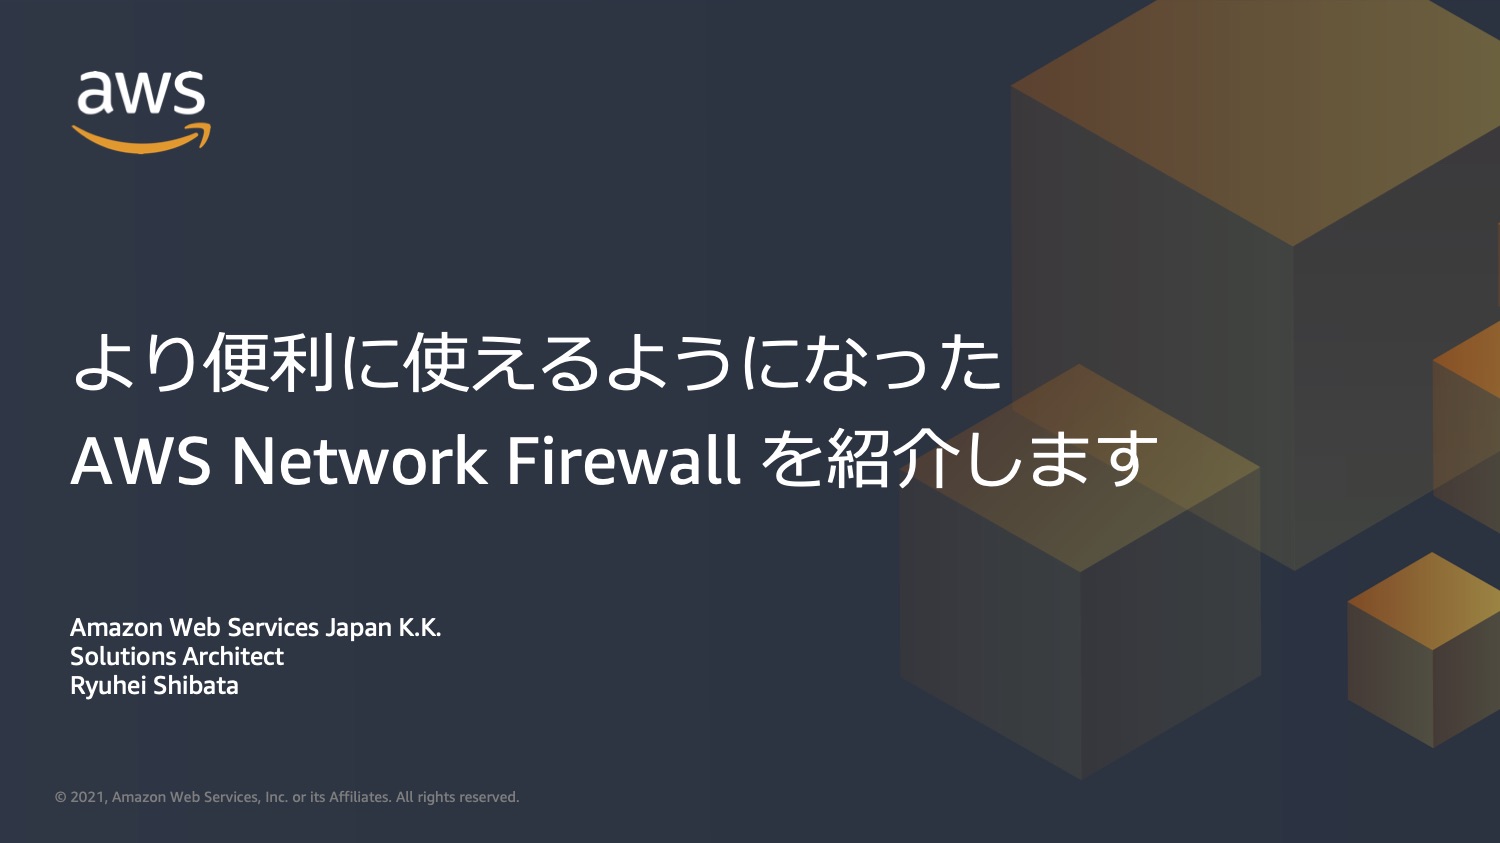 より便利に使えるようになったAWS Network Firewallを紹介します